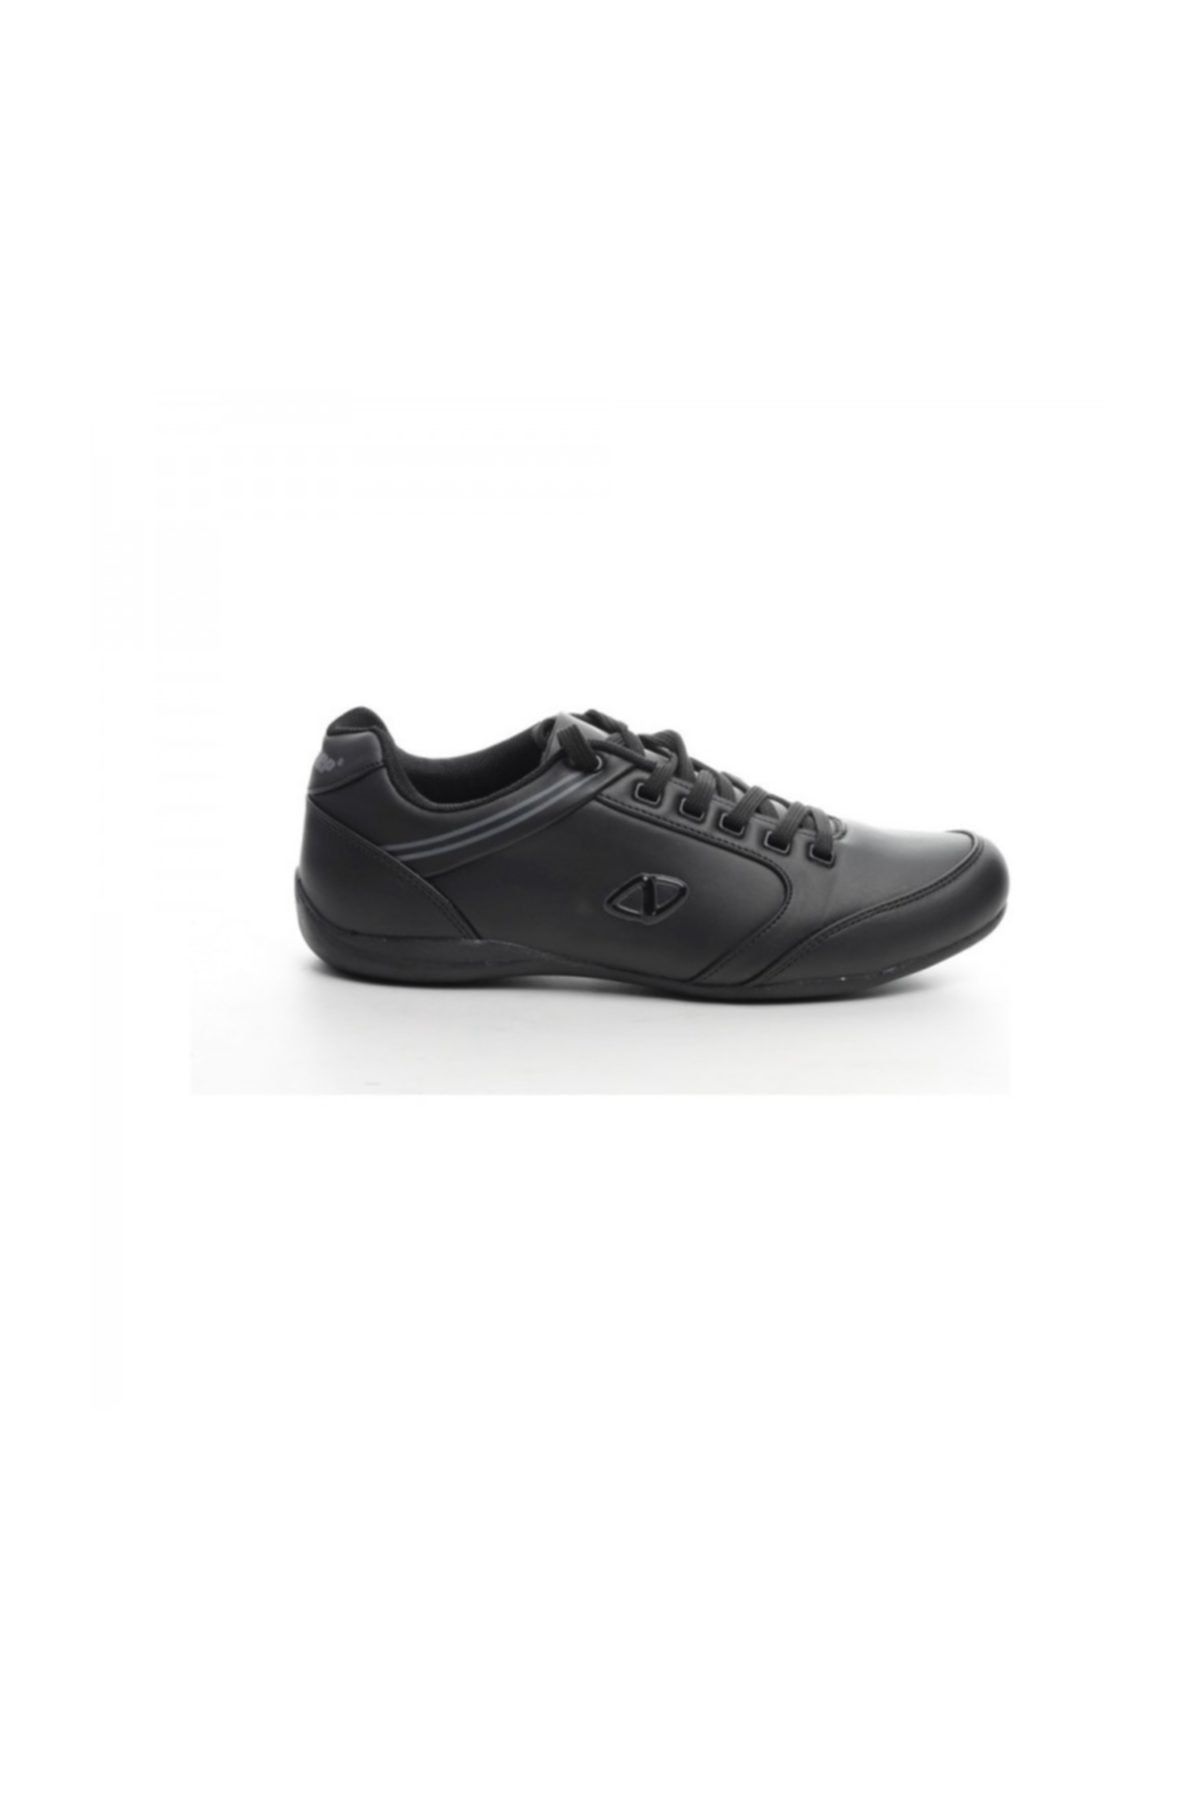 Nstep West-1 Sneakers Erkek Spor Ayakkabı Siyah